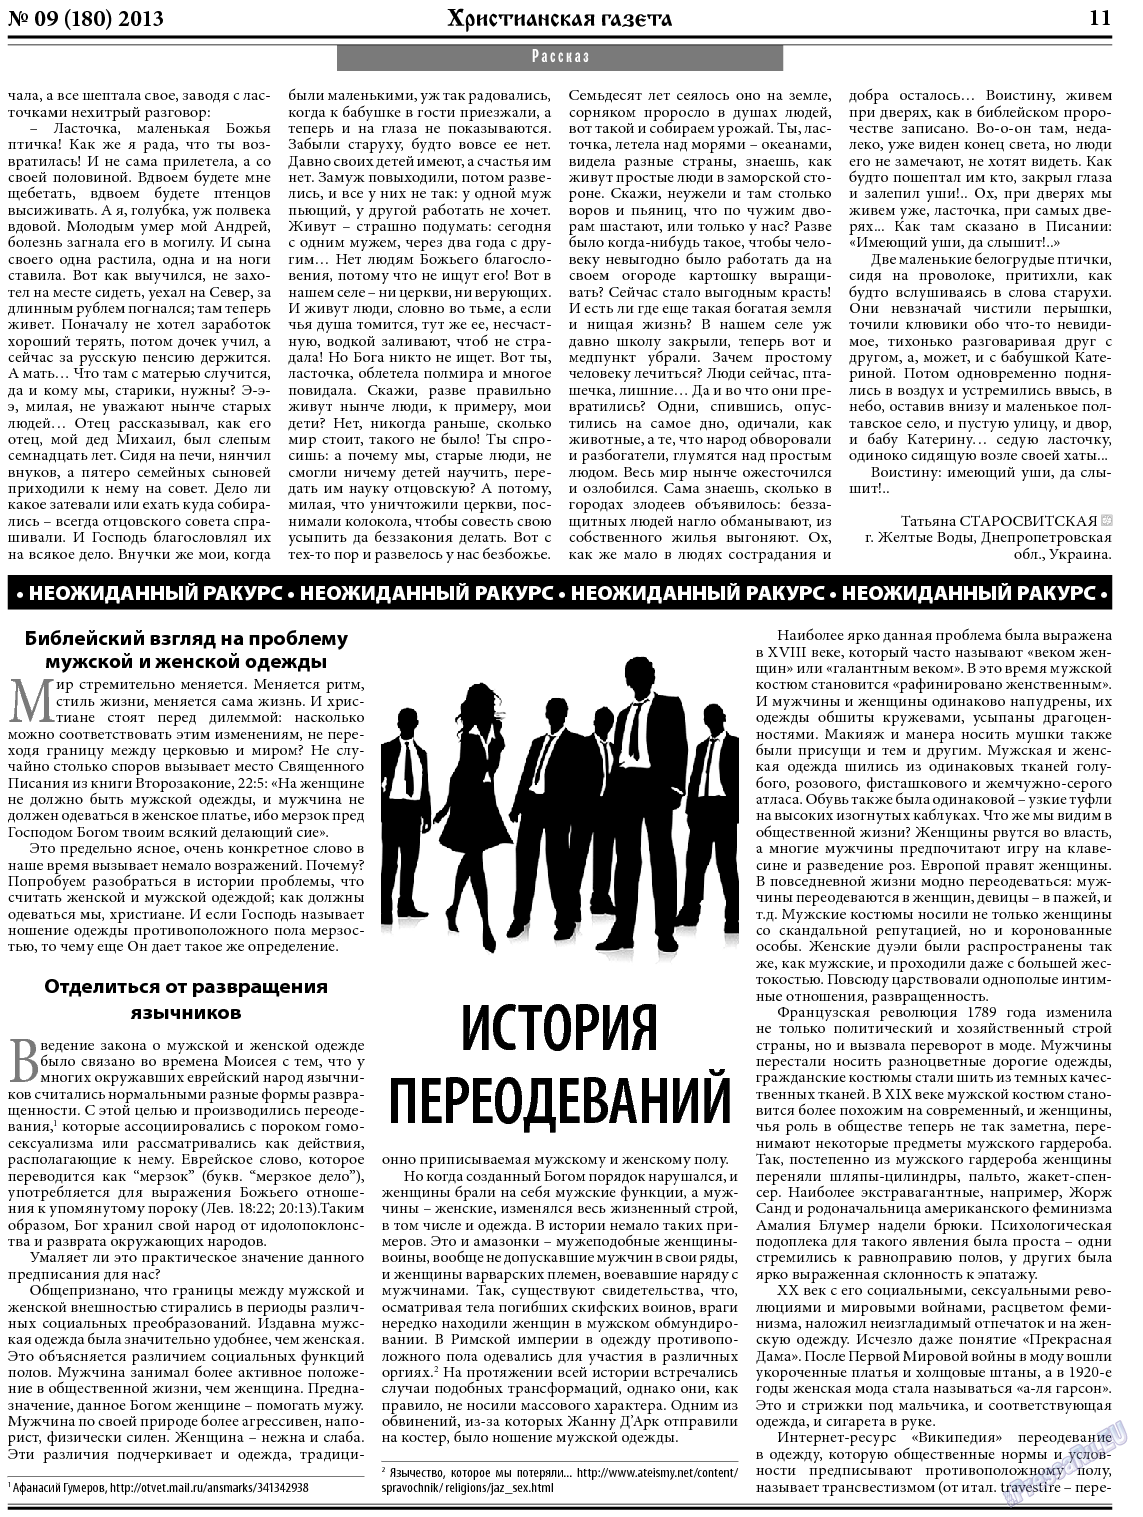 Христианская газета, газета. 2013 №9 стр.11